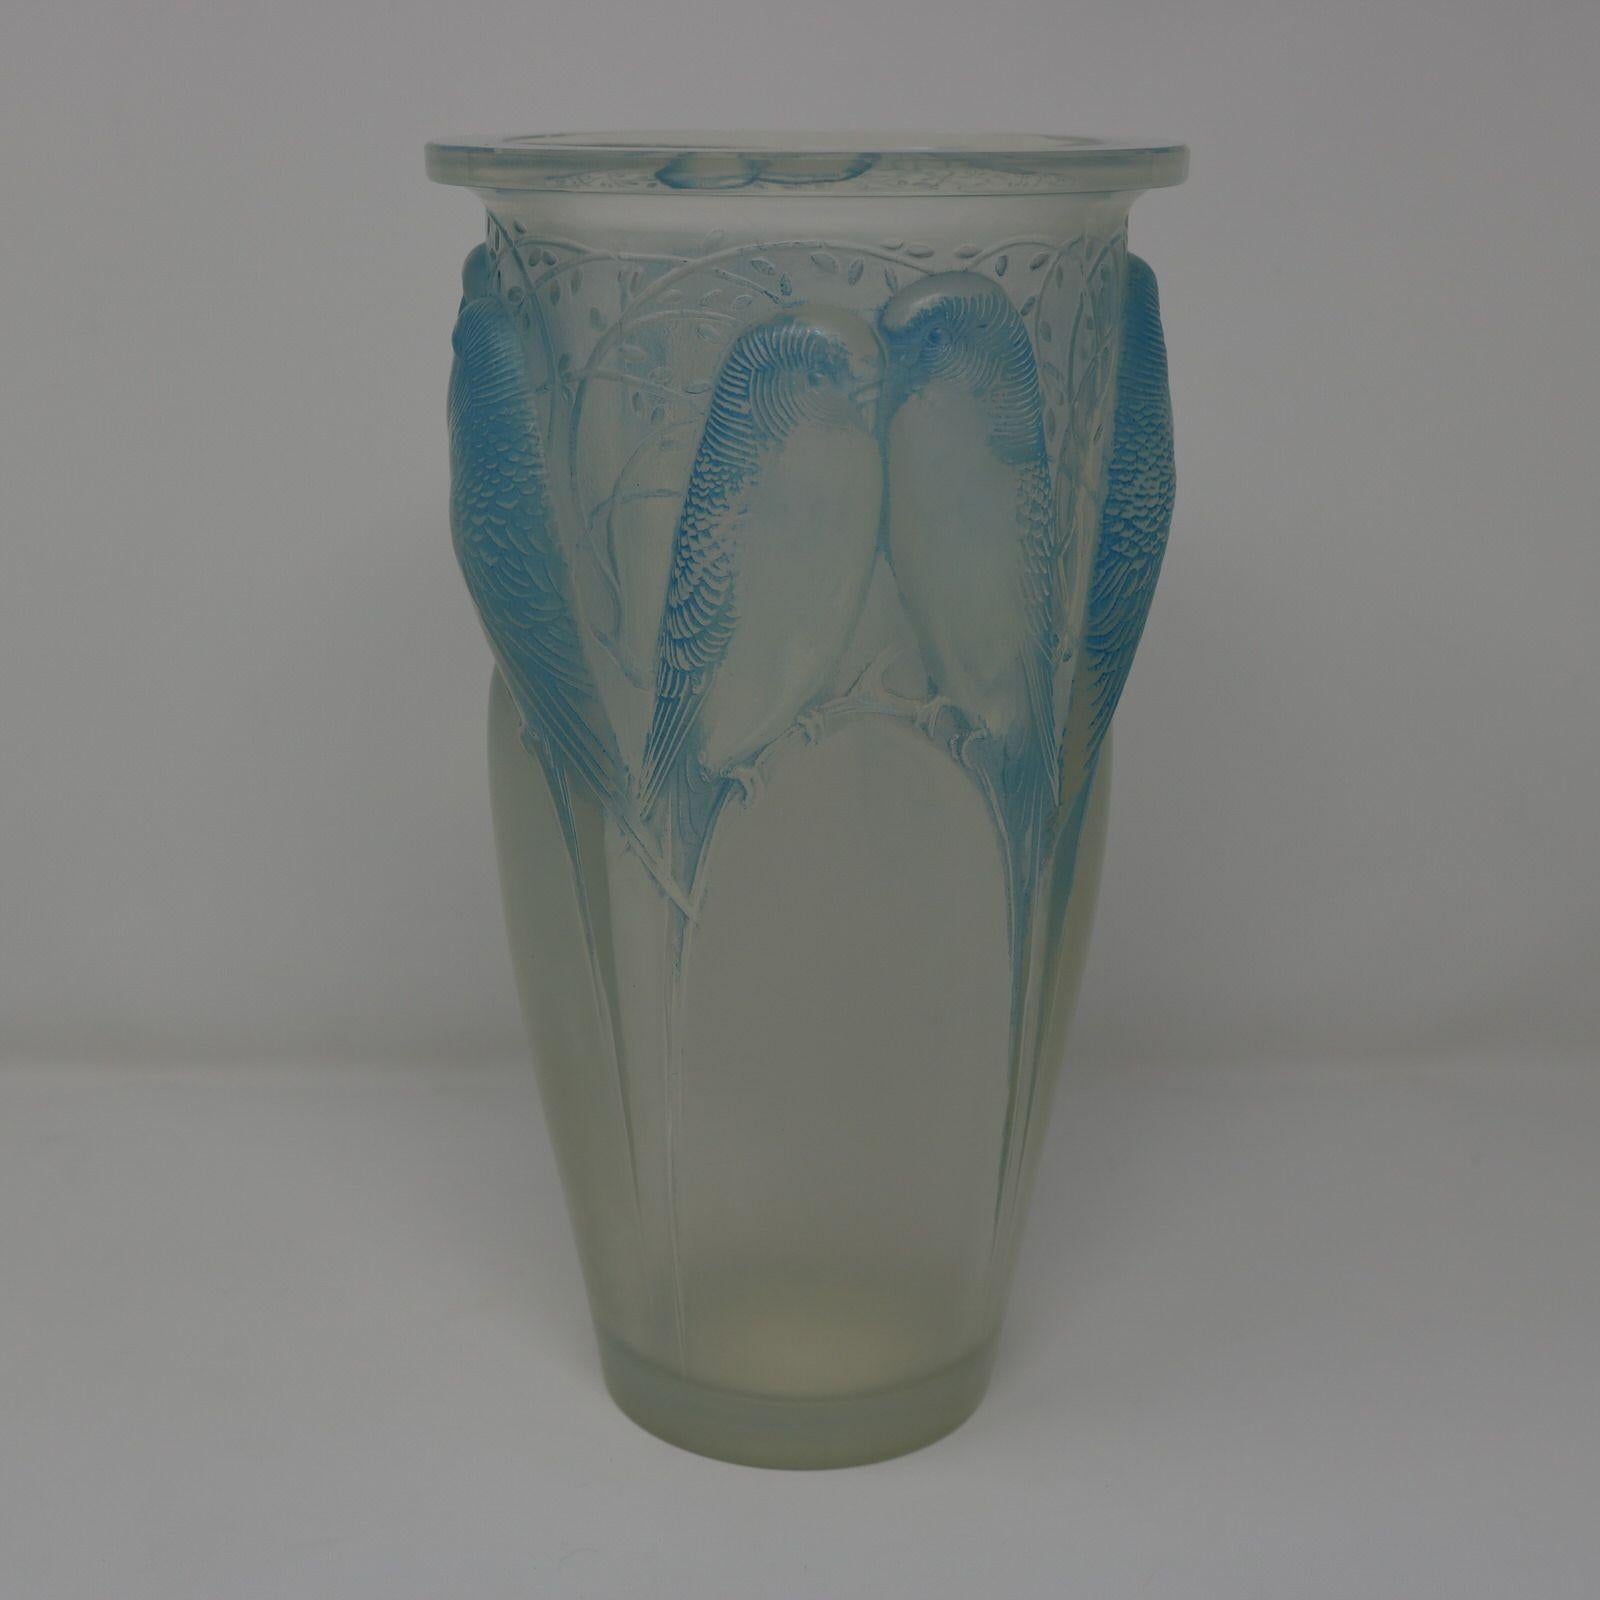 Vase 'Ceylan' aus opalisierendem Glas von Rene Lalique. Blaue Flecken auf Details. Dieses Muster zeigt Sittiche, Seite an Seite. Radschnitt und gravierte Herstellermarke 